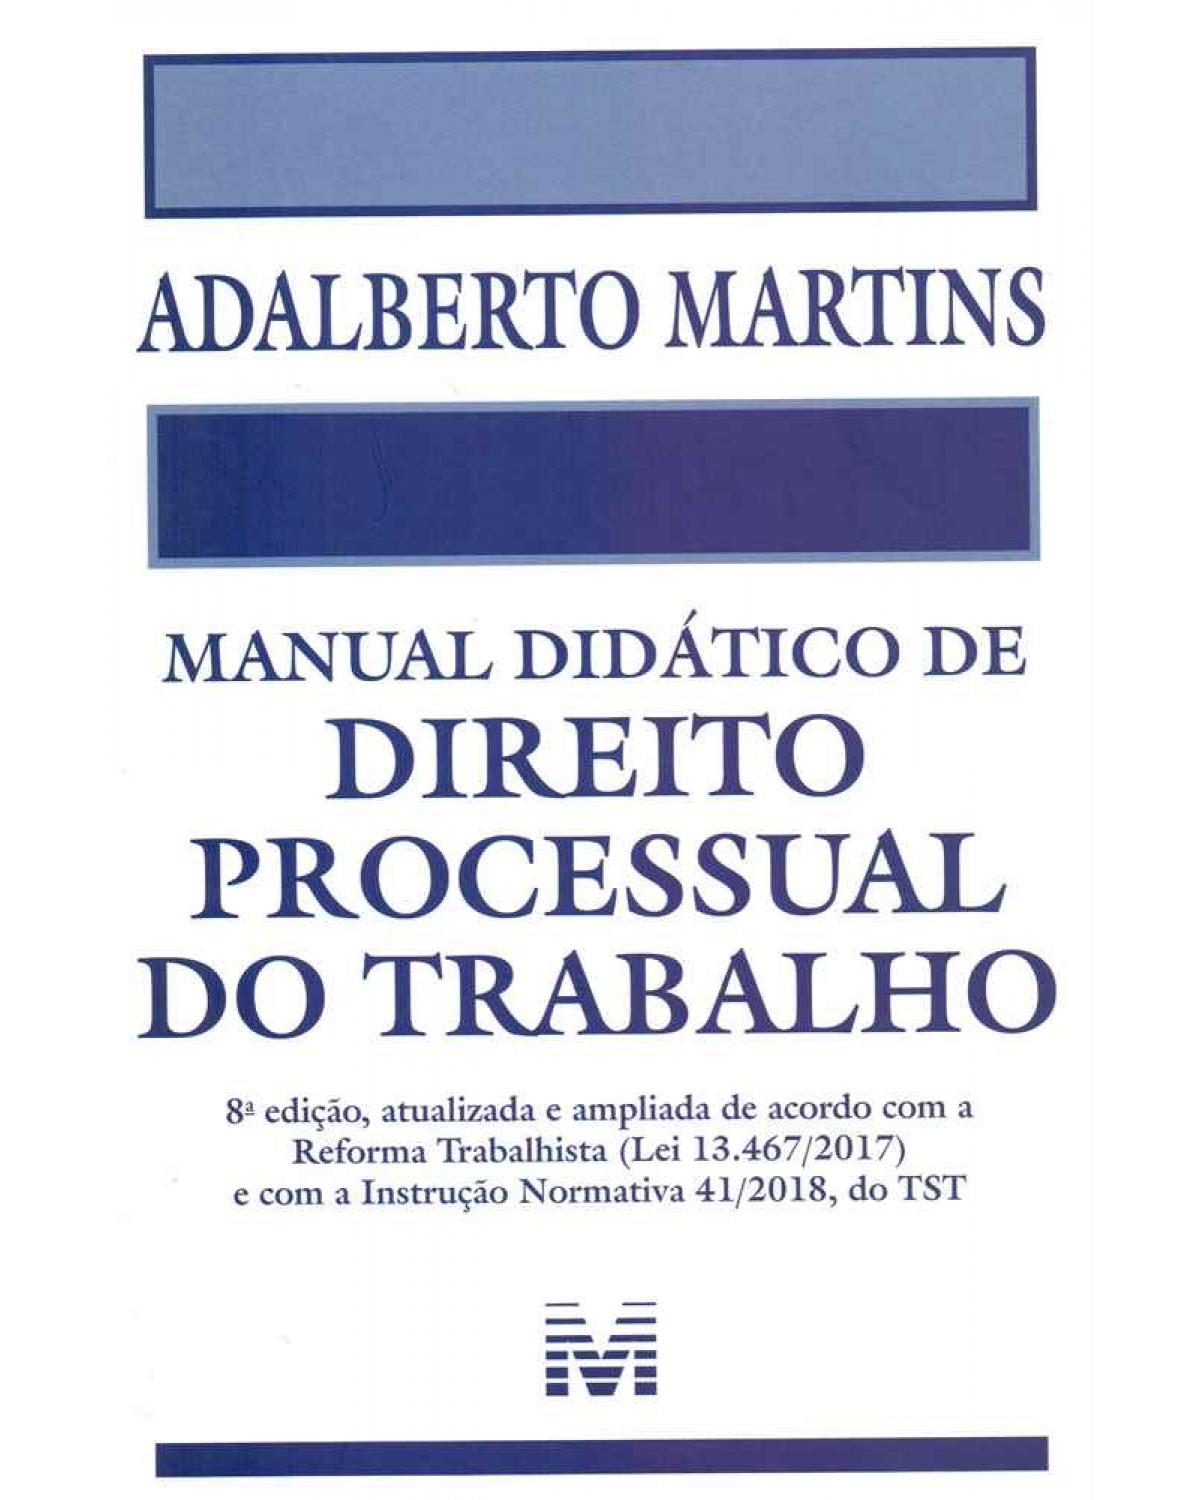 Manual didático de direito processual do trabalho - 8ª Edição